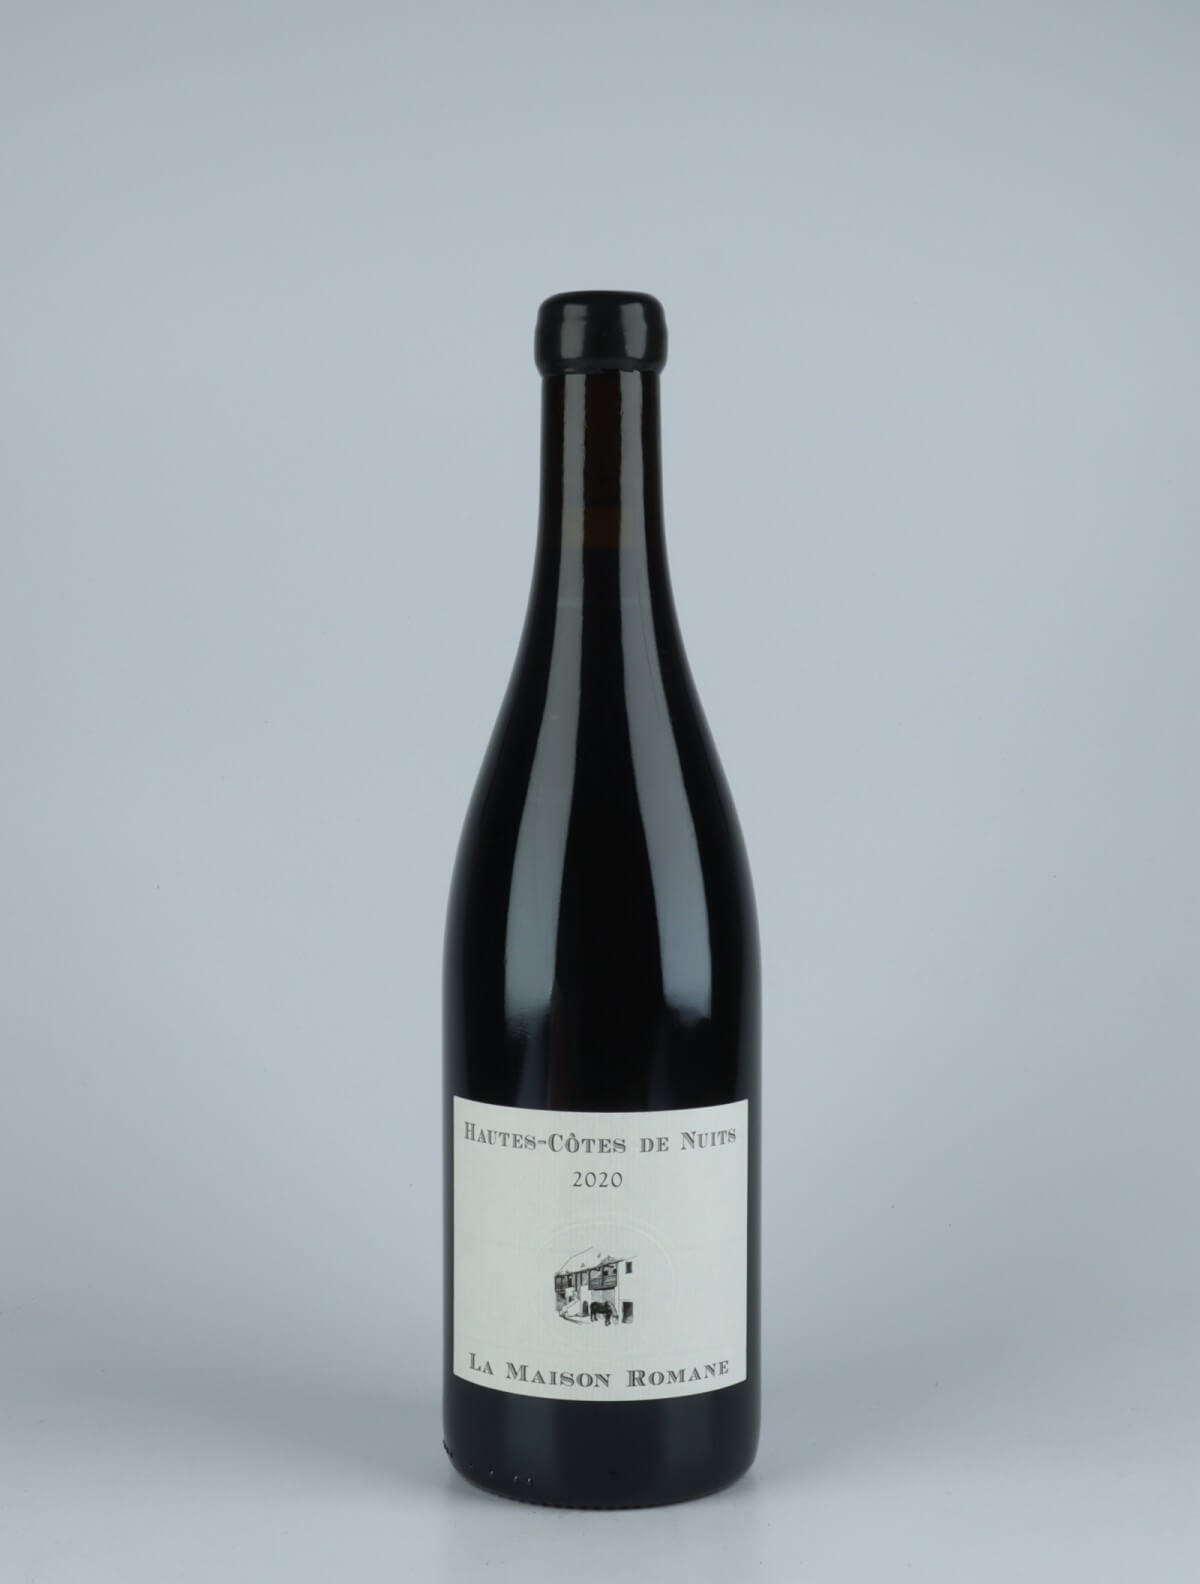 A bottle 2020 Hautes Côtes de Nuits Rouge Red wine from La Maison Romane, Burgundy in France